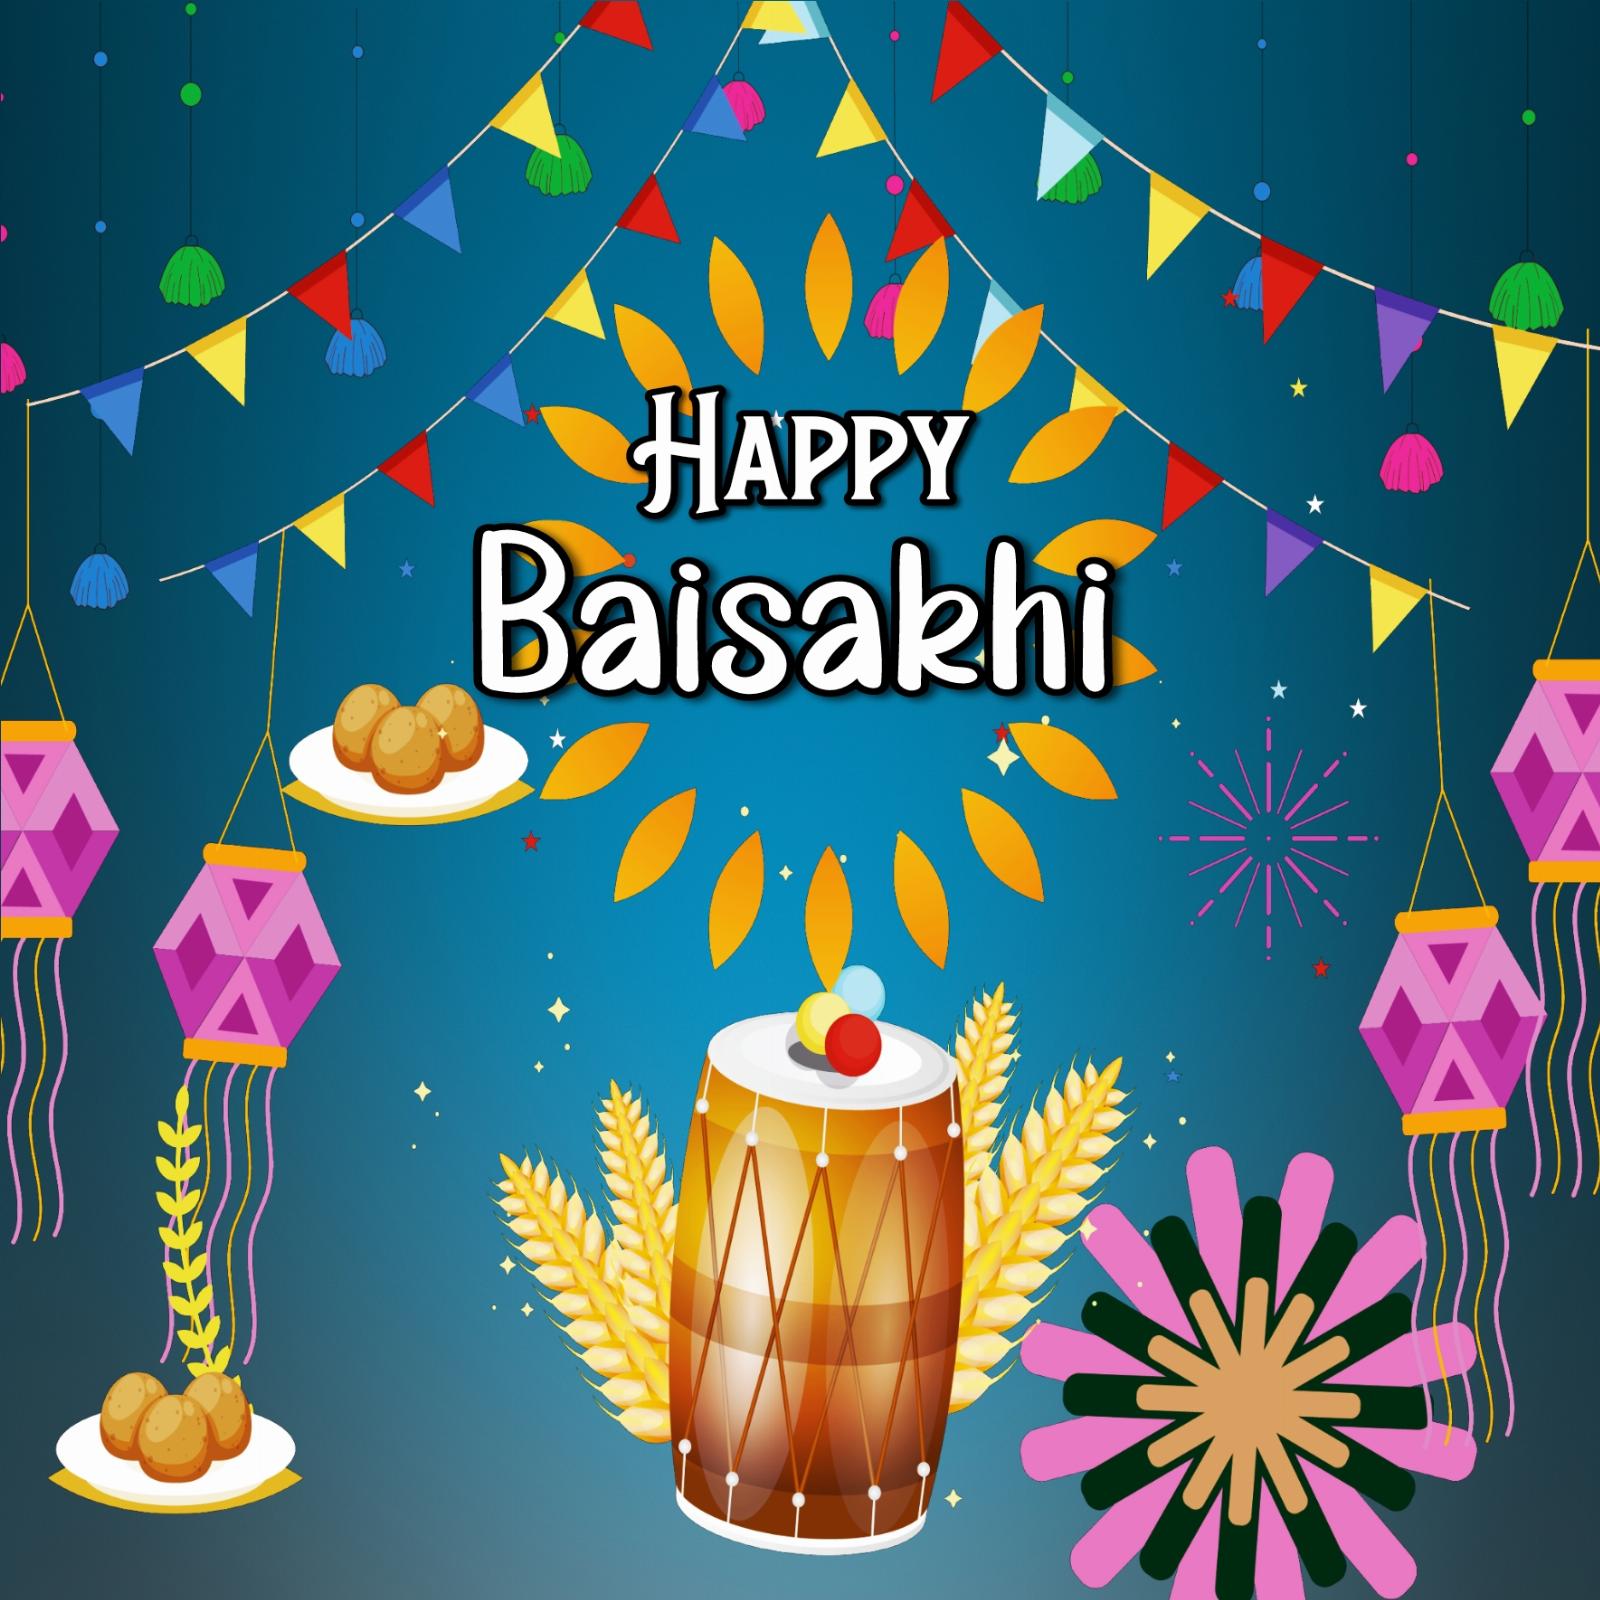 Whatsapp Happy Baisakhi Images